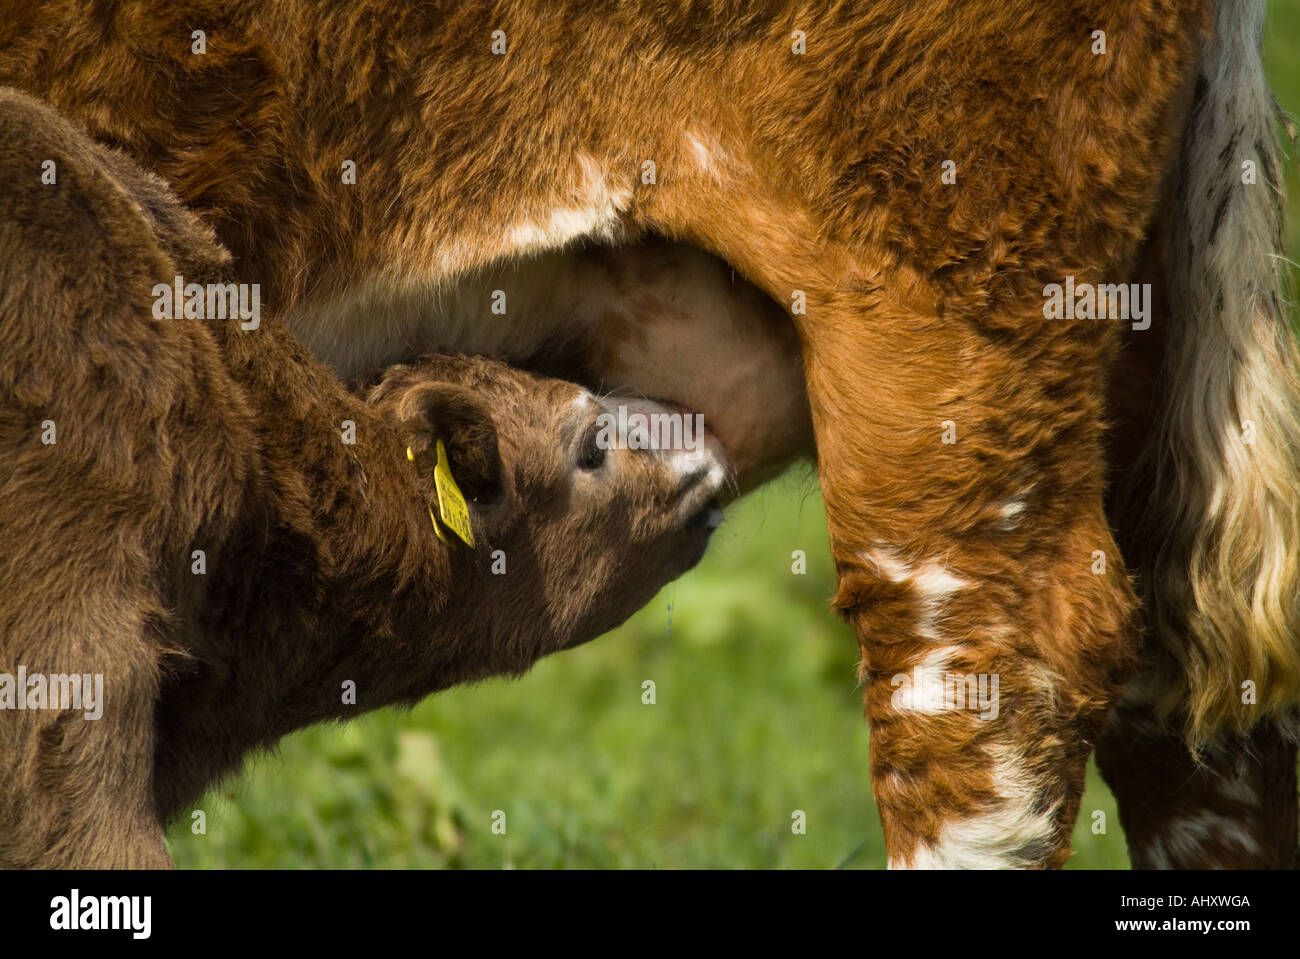 dh Calf et vaches UK Jeune veau brun succion race croisée mère vache dder allaitant lait allaitant animal nourrissant nouveau-né Banque D'Images